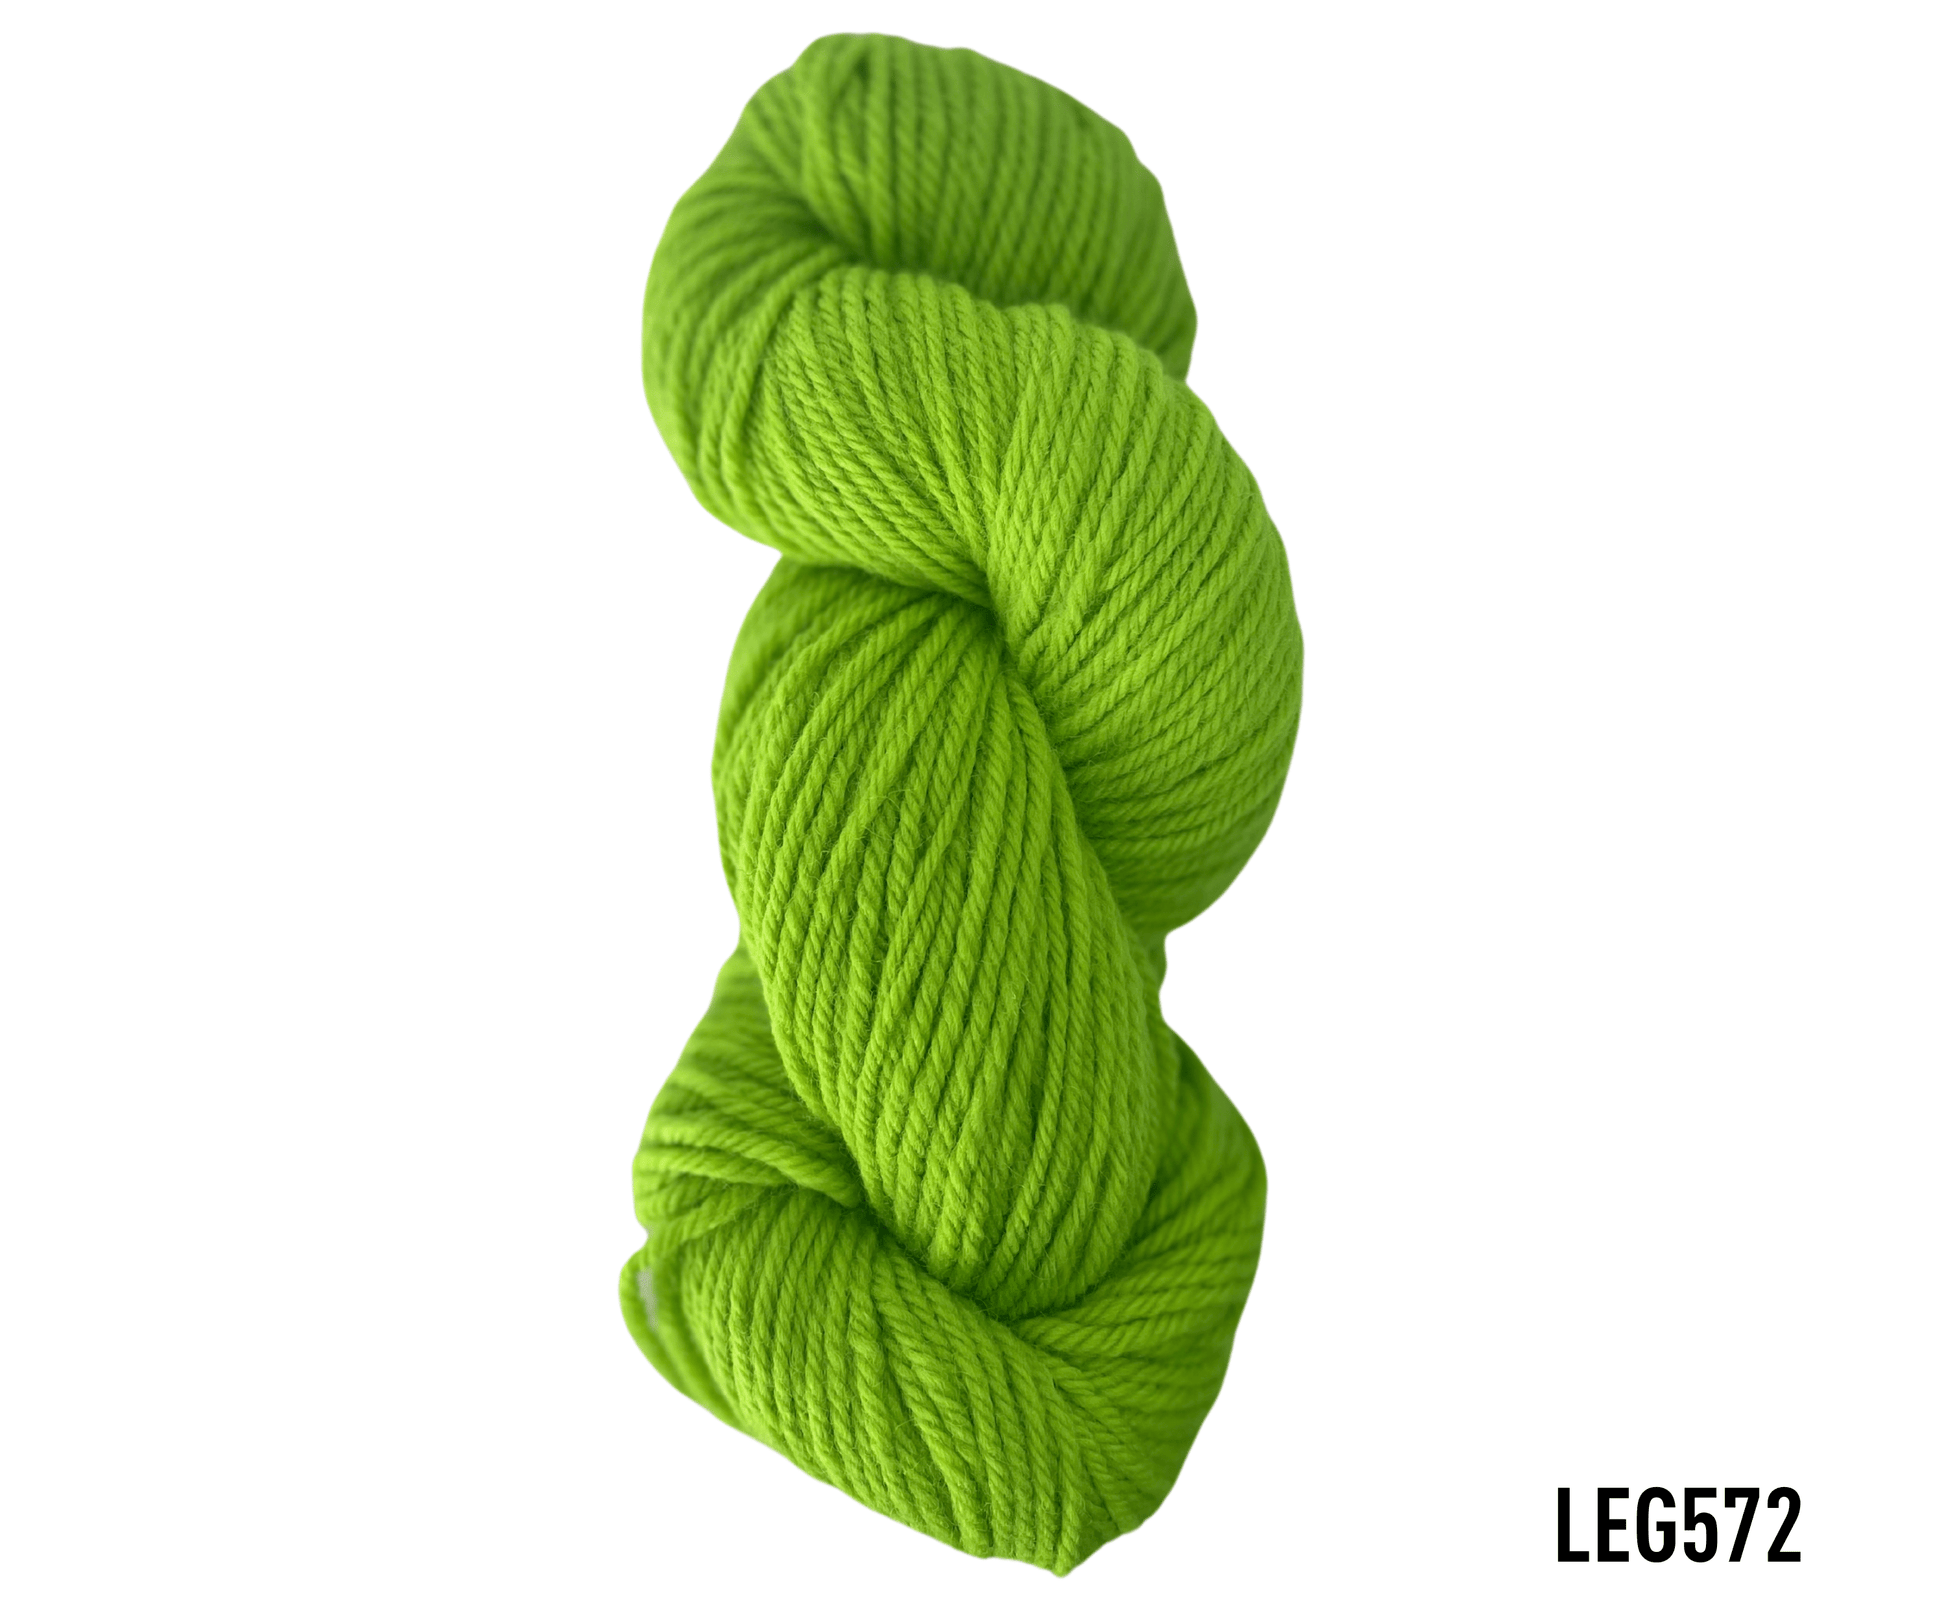 lanabel LANA NATURAL GRUESA LEG572 lana natural gruesa Verdes(lana natural gruesa)